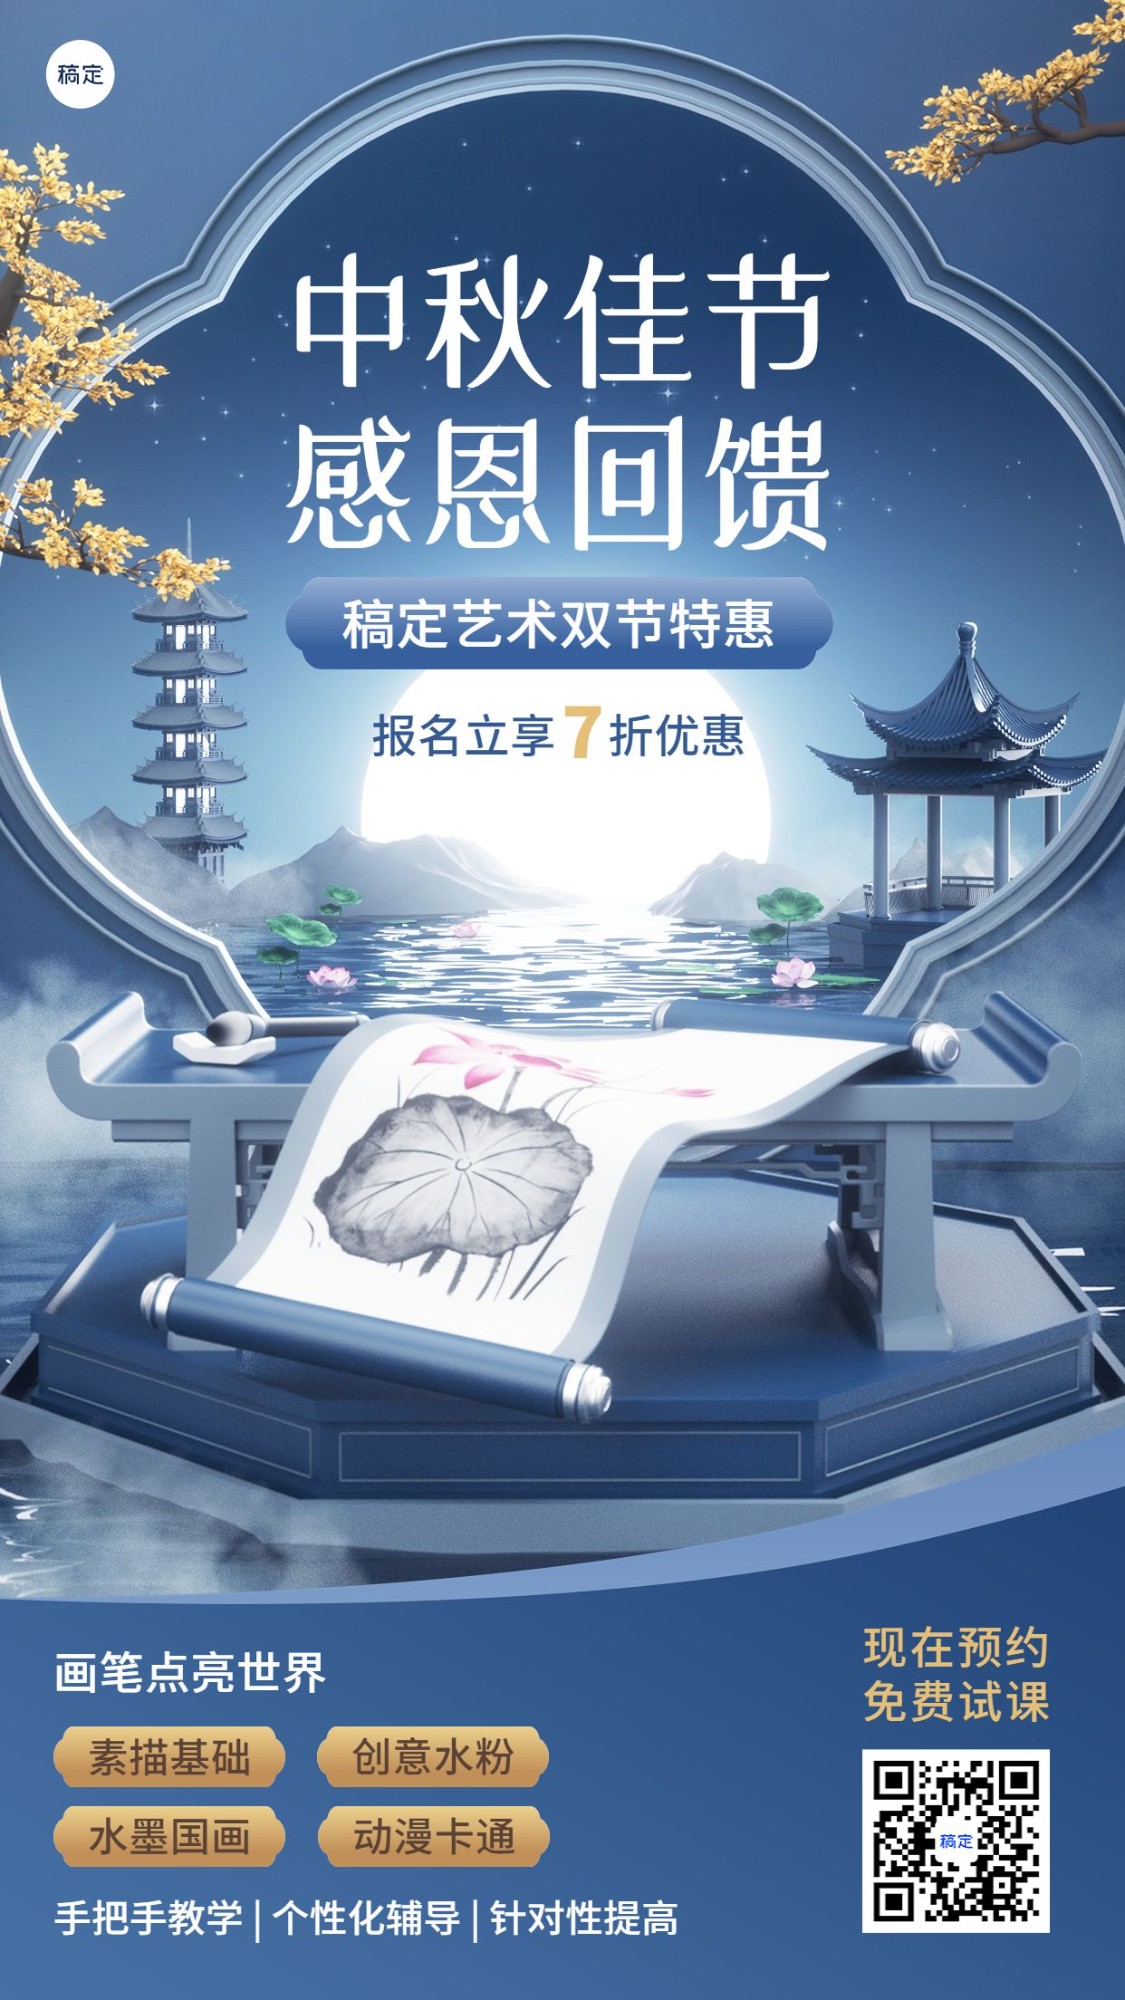 中秋节教育行业艺术兴趣培训班招生促销3D风格手机海报